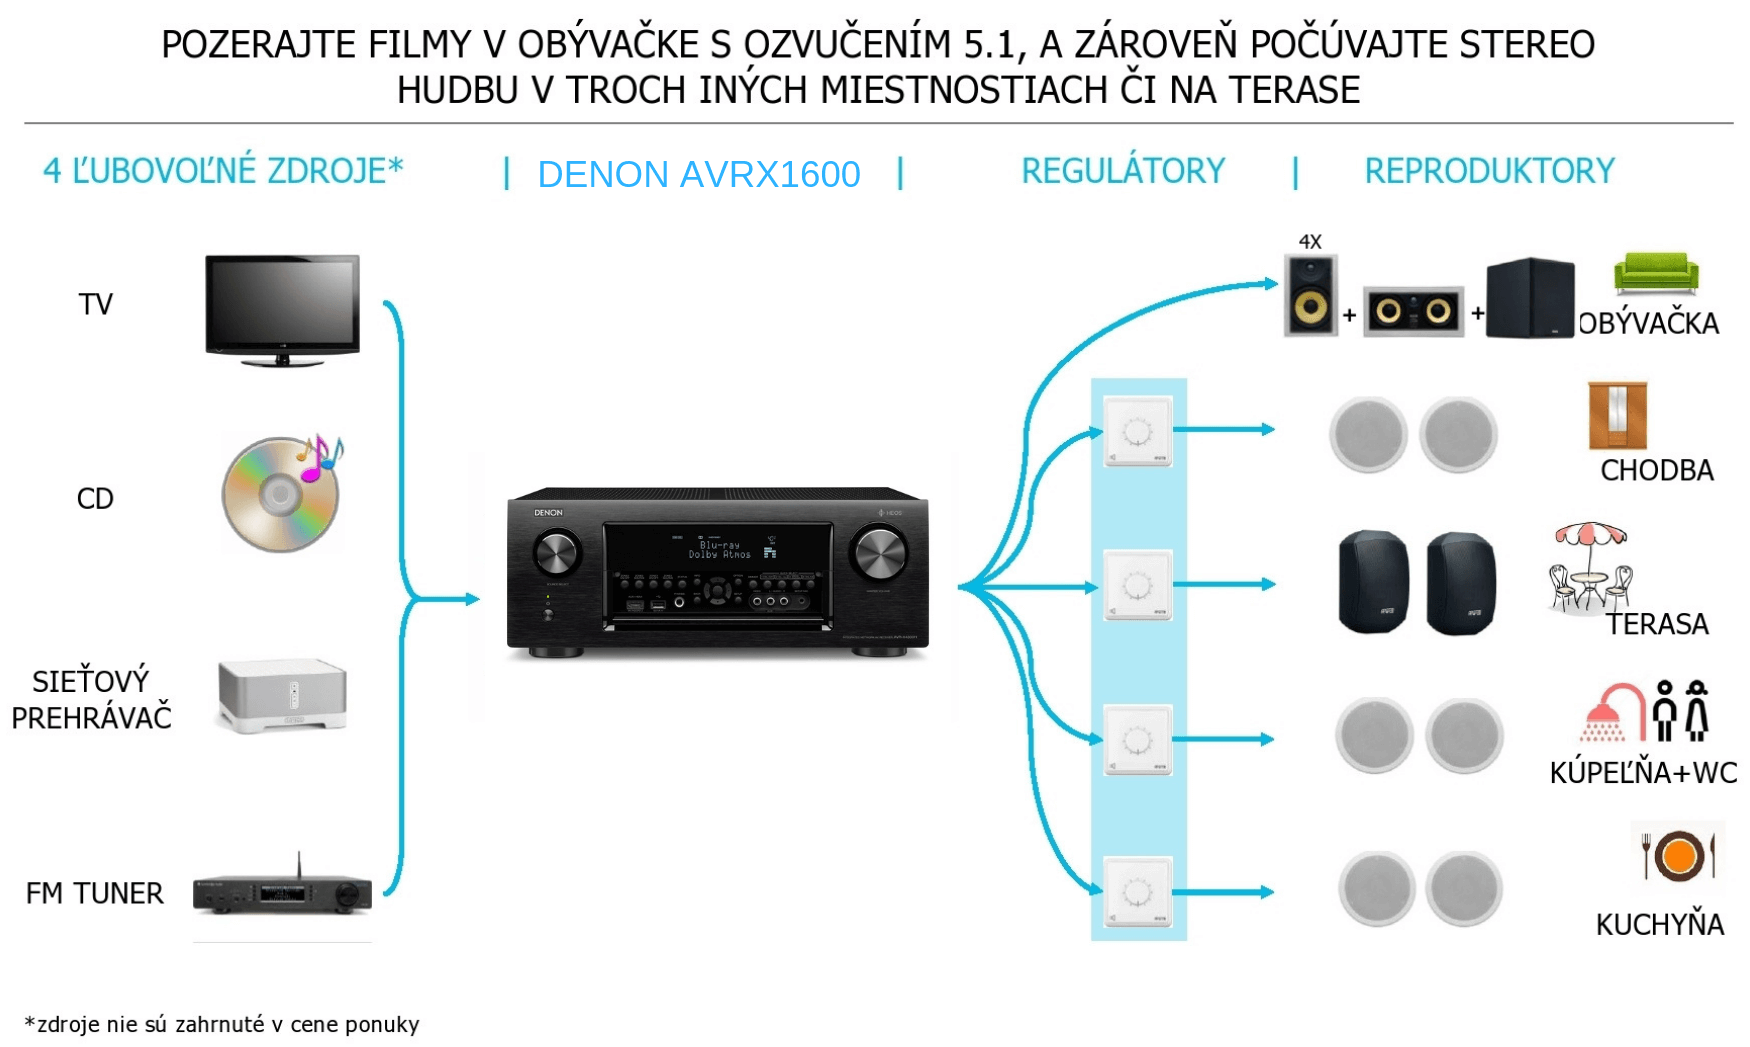 Ozvučenie domácnosti pomocou receivera DENON AVR-X1600H